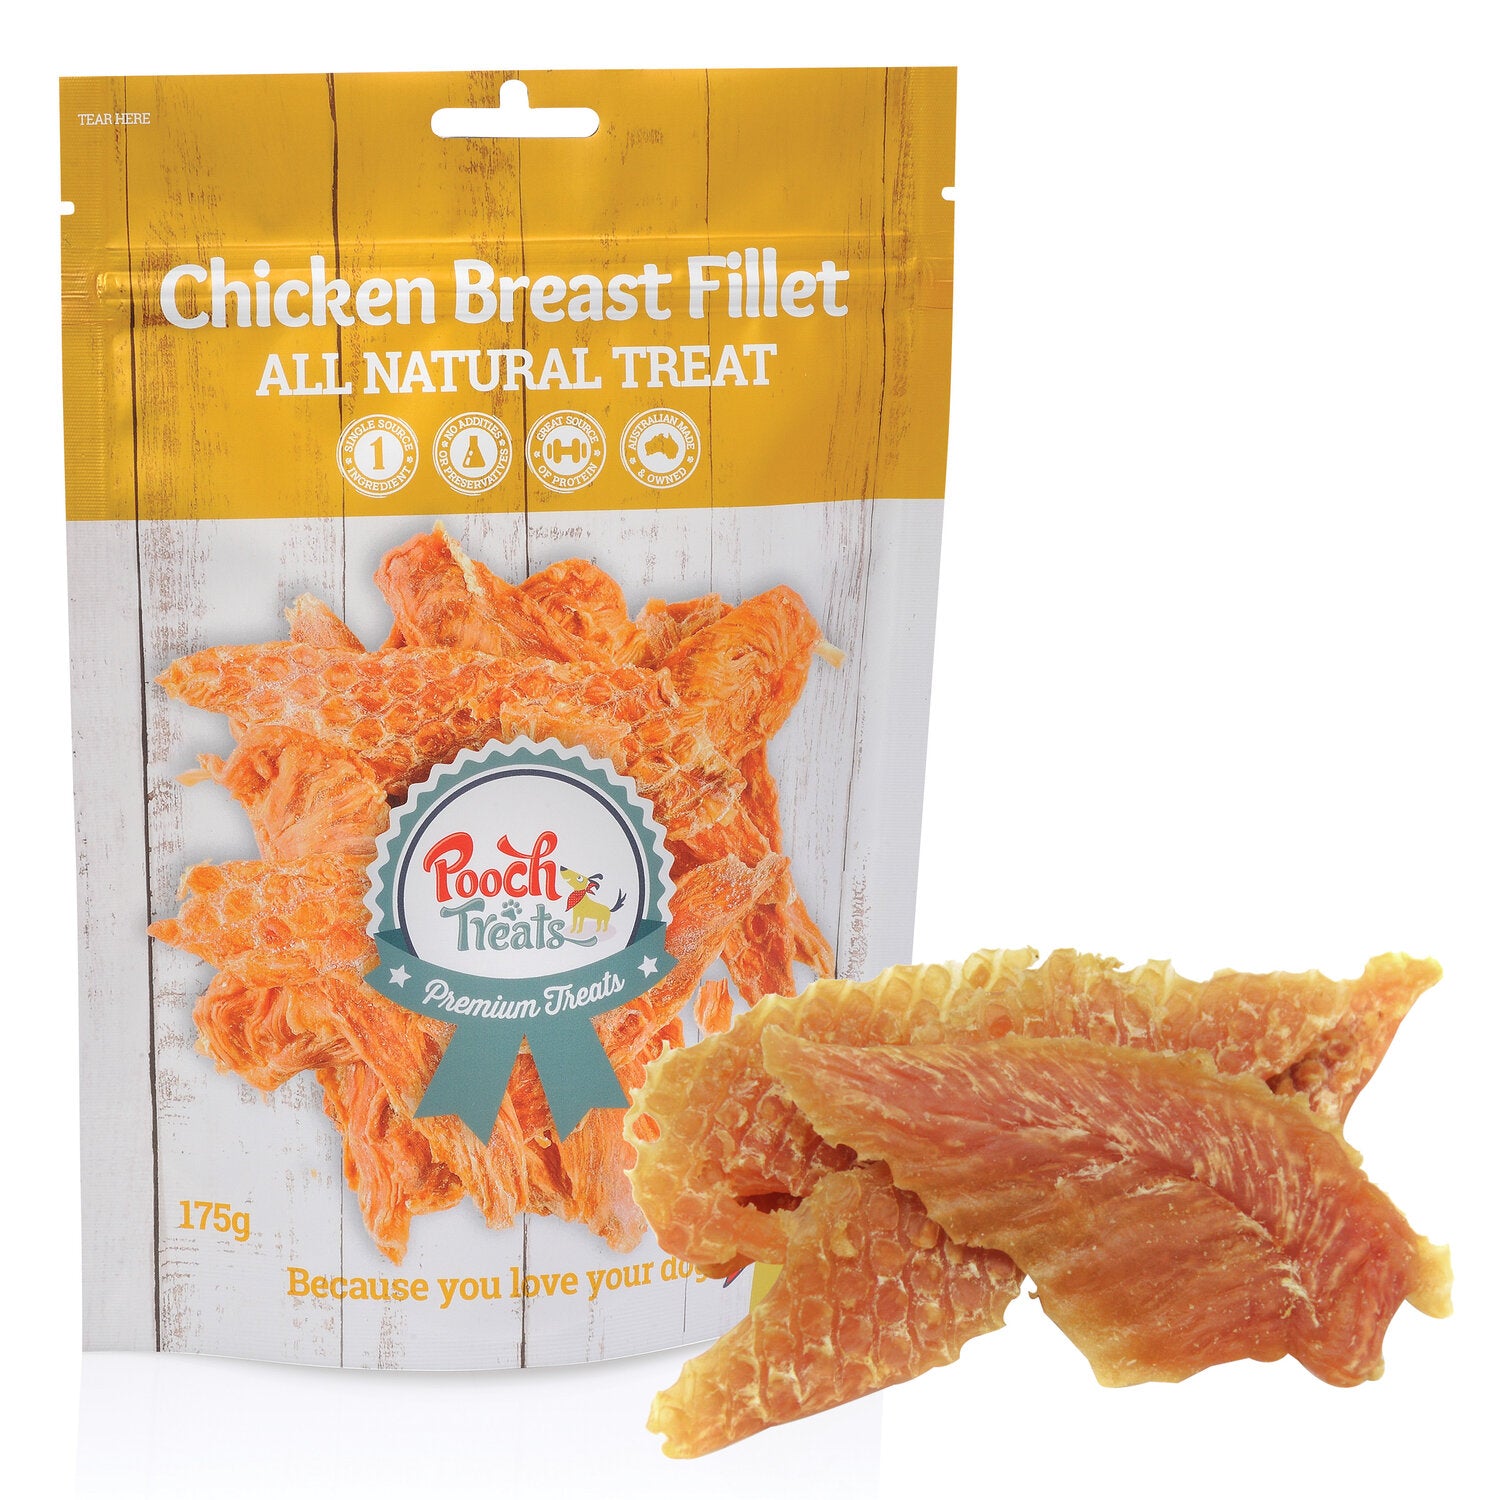 Australian Chicken Breast Fillet (500g)